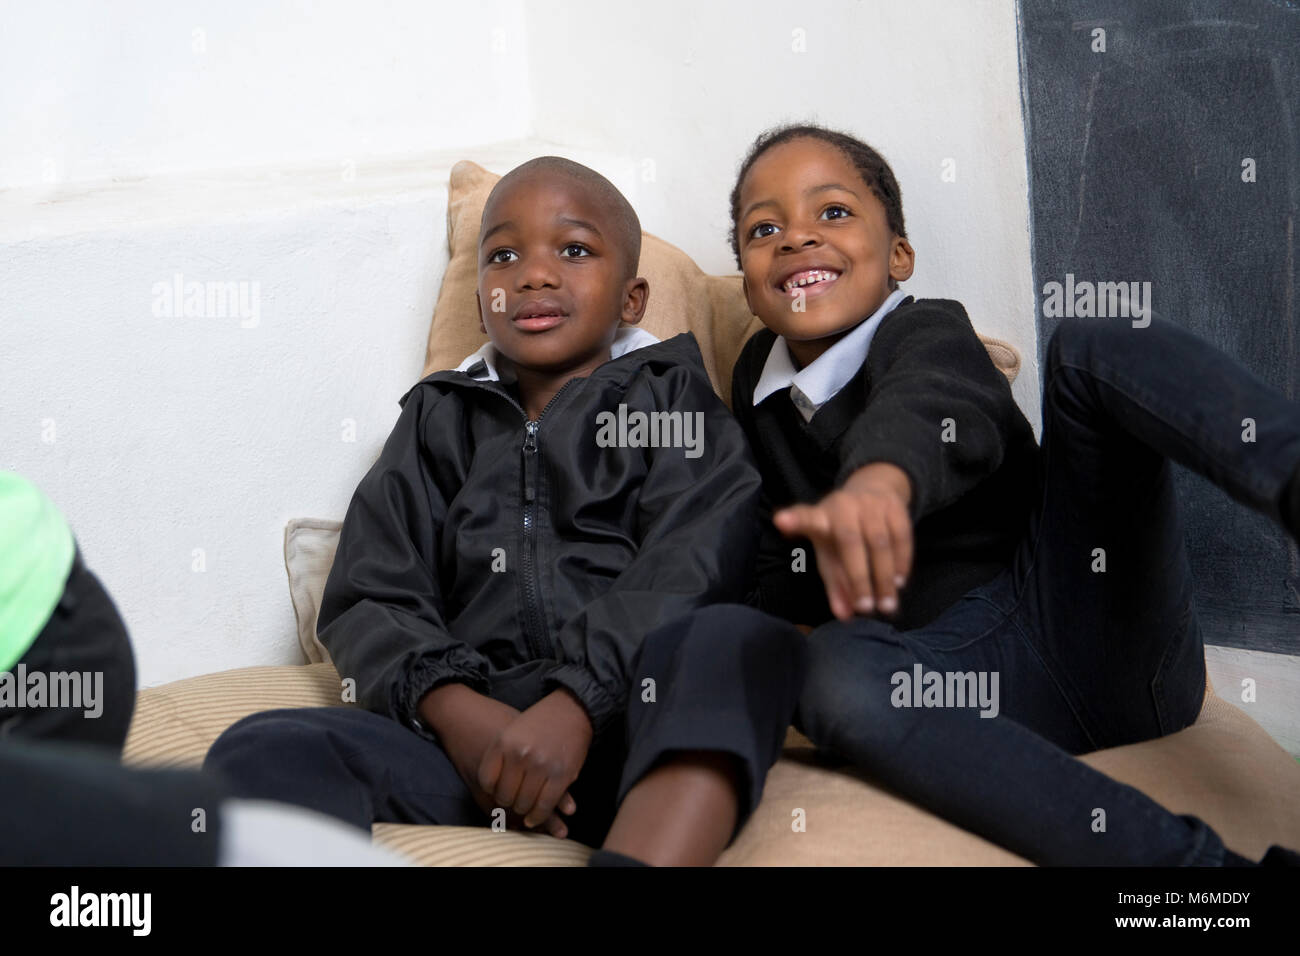 Portrait de deux jeunes enfants smiling Banque D'Images